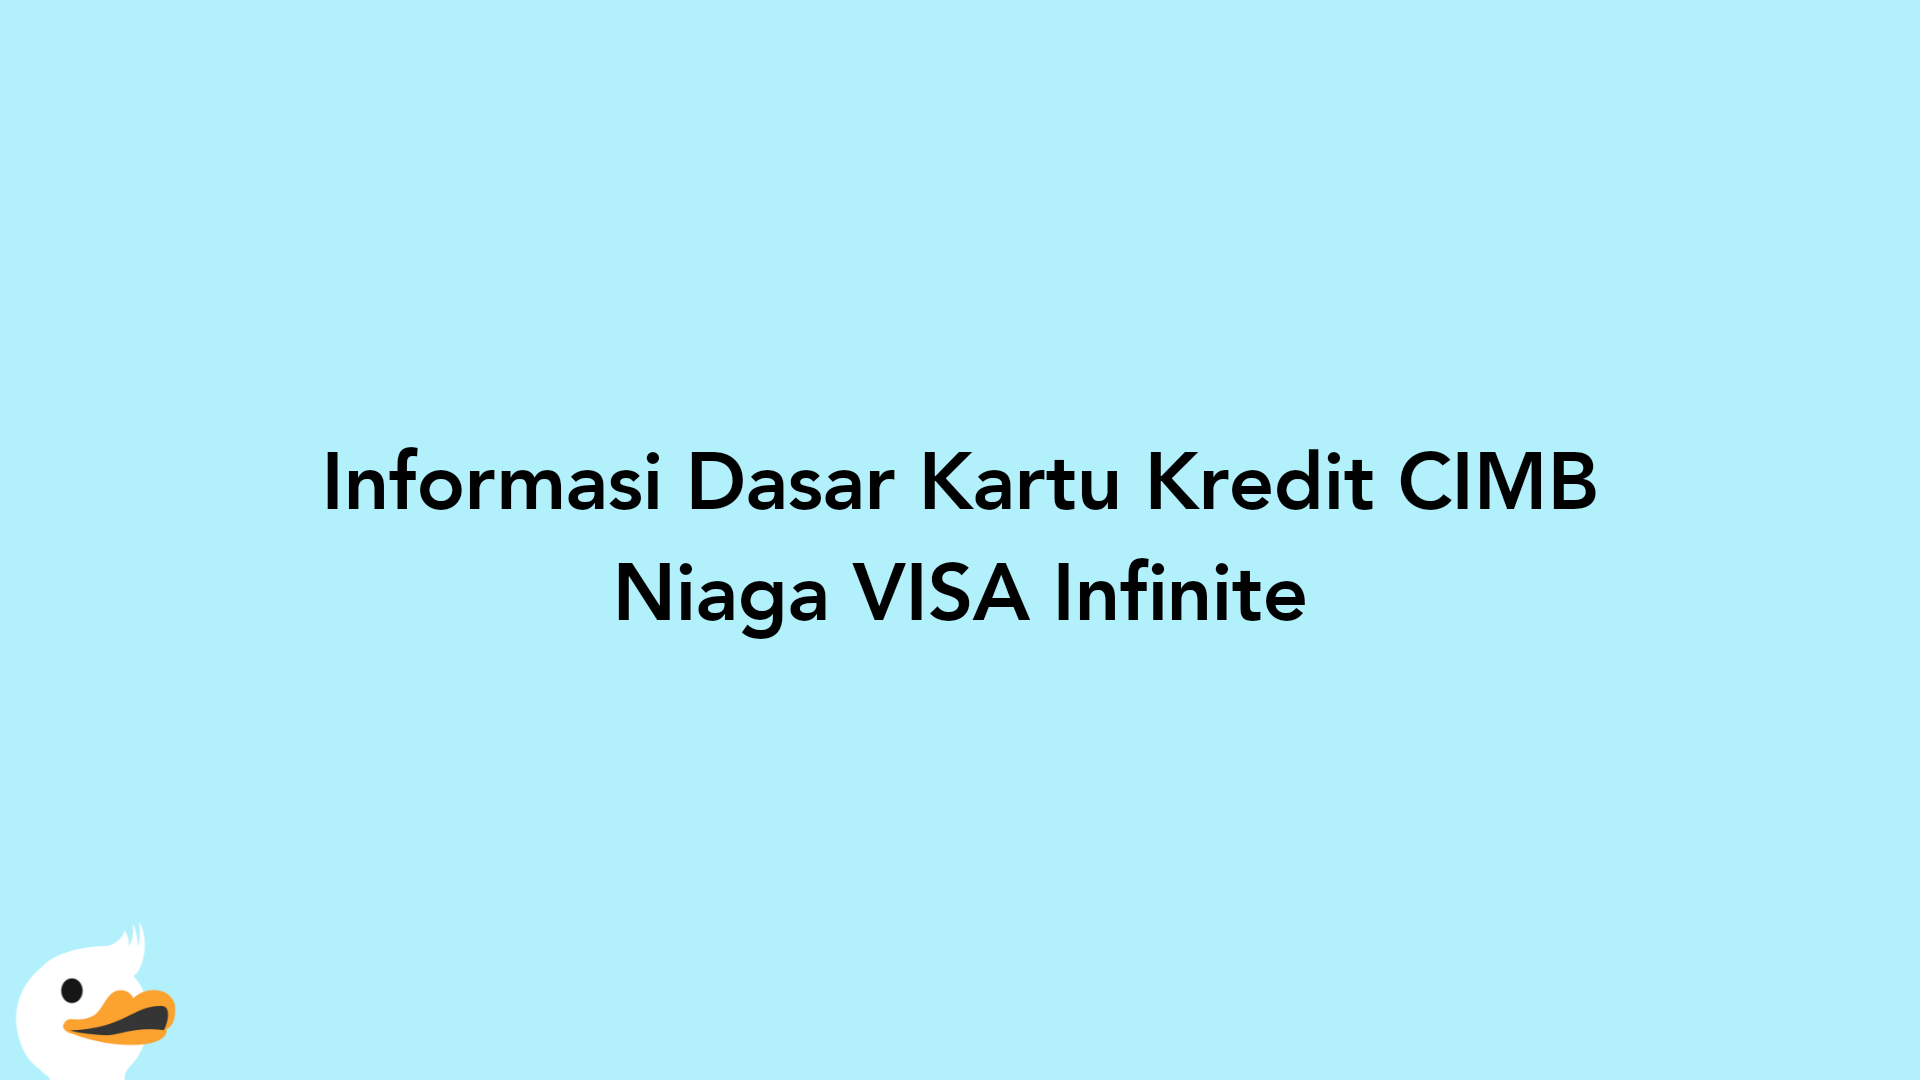 Informasi Dasar Kartu Kredit CIMB Niaga VISA Infinite